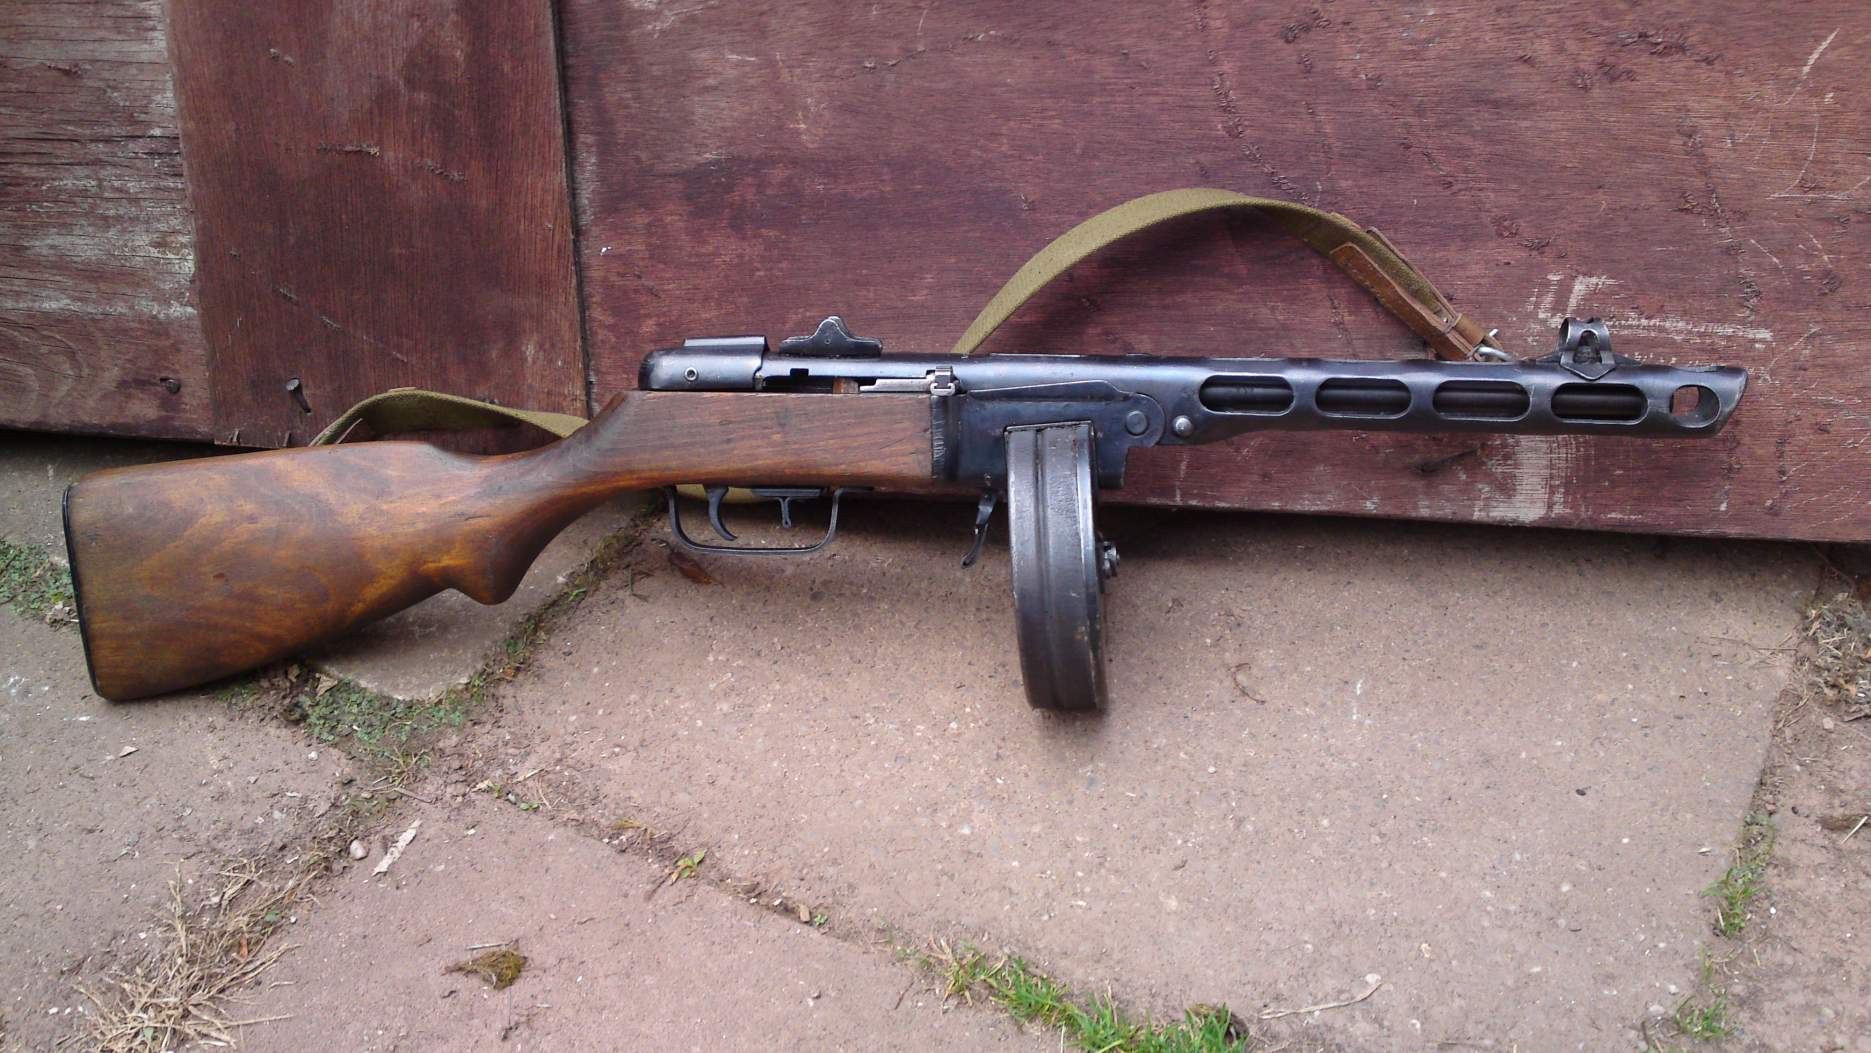 Trước khi súng AK-47 trở thành biểu tượng của các lực lượng vũ trang Liên Xô, tiểu liên PPSh-41, một khẩu súng hình thù thô kệch với những âm thanh đáng sợ khi bắn liên thanh, được biên chế chính thức và sử dụng hiệu quả trong Hồng quân nước này.